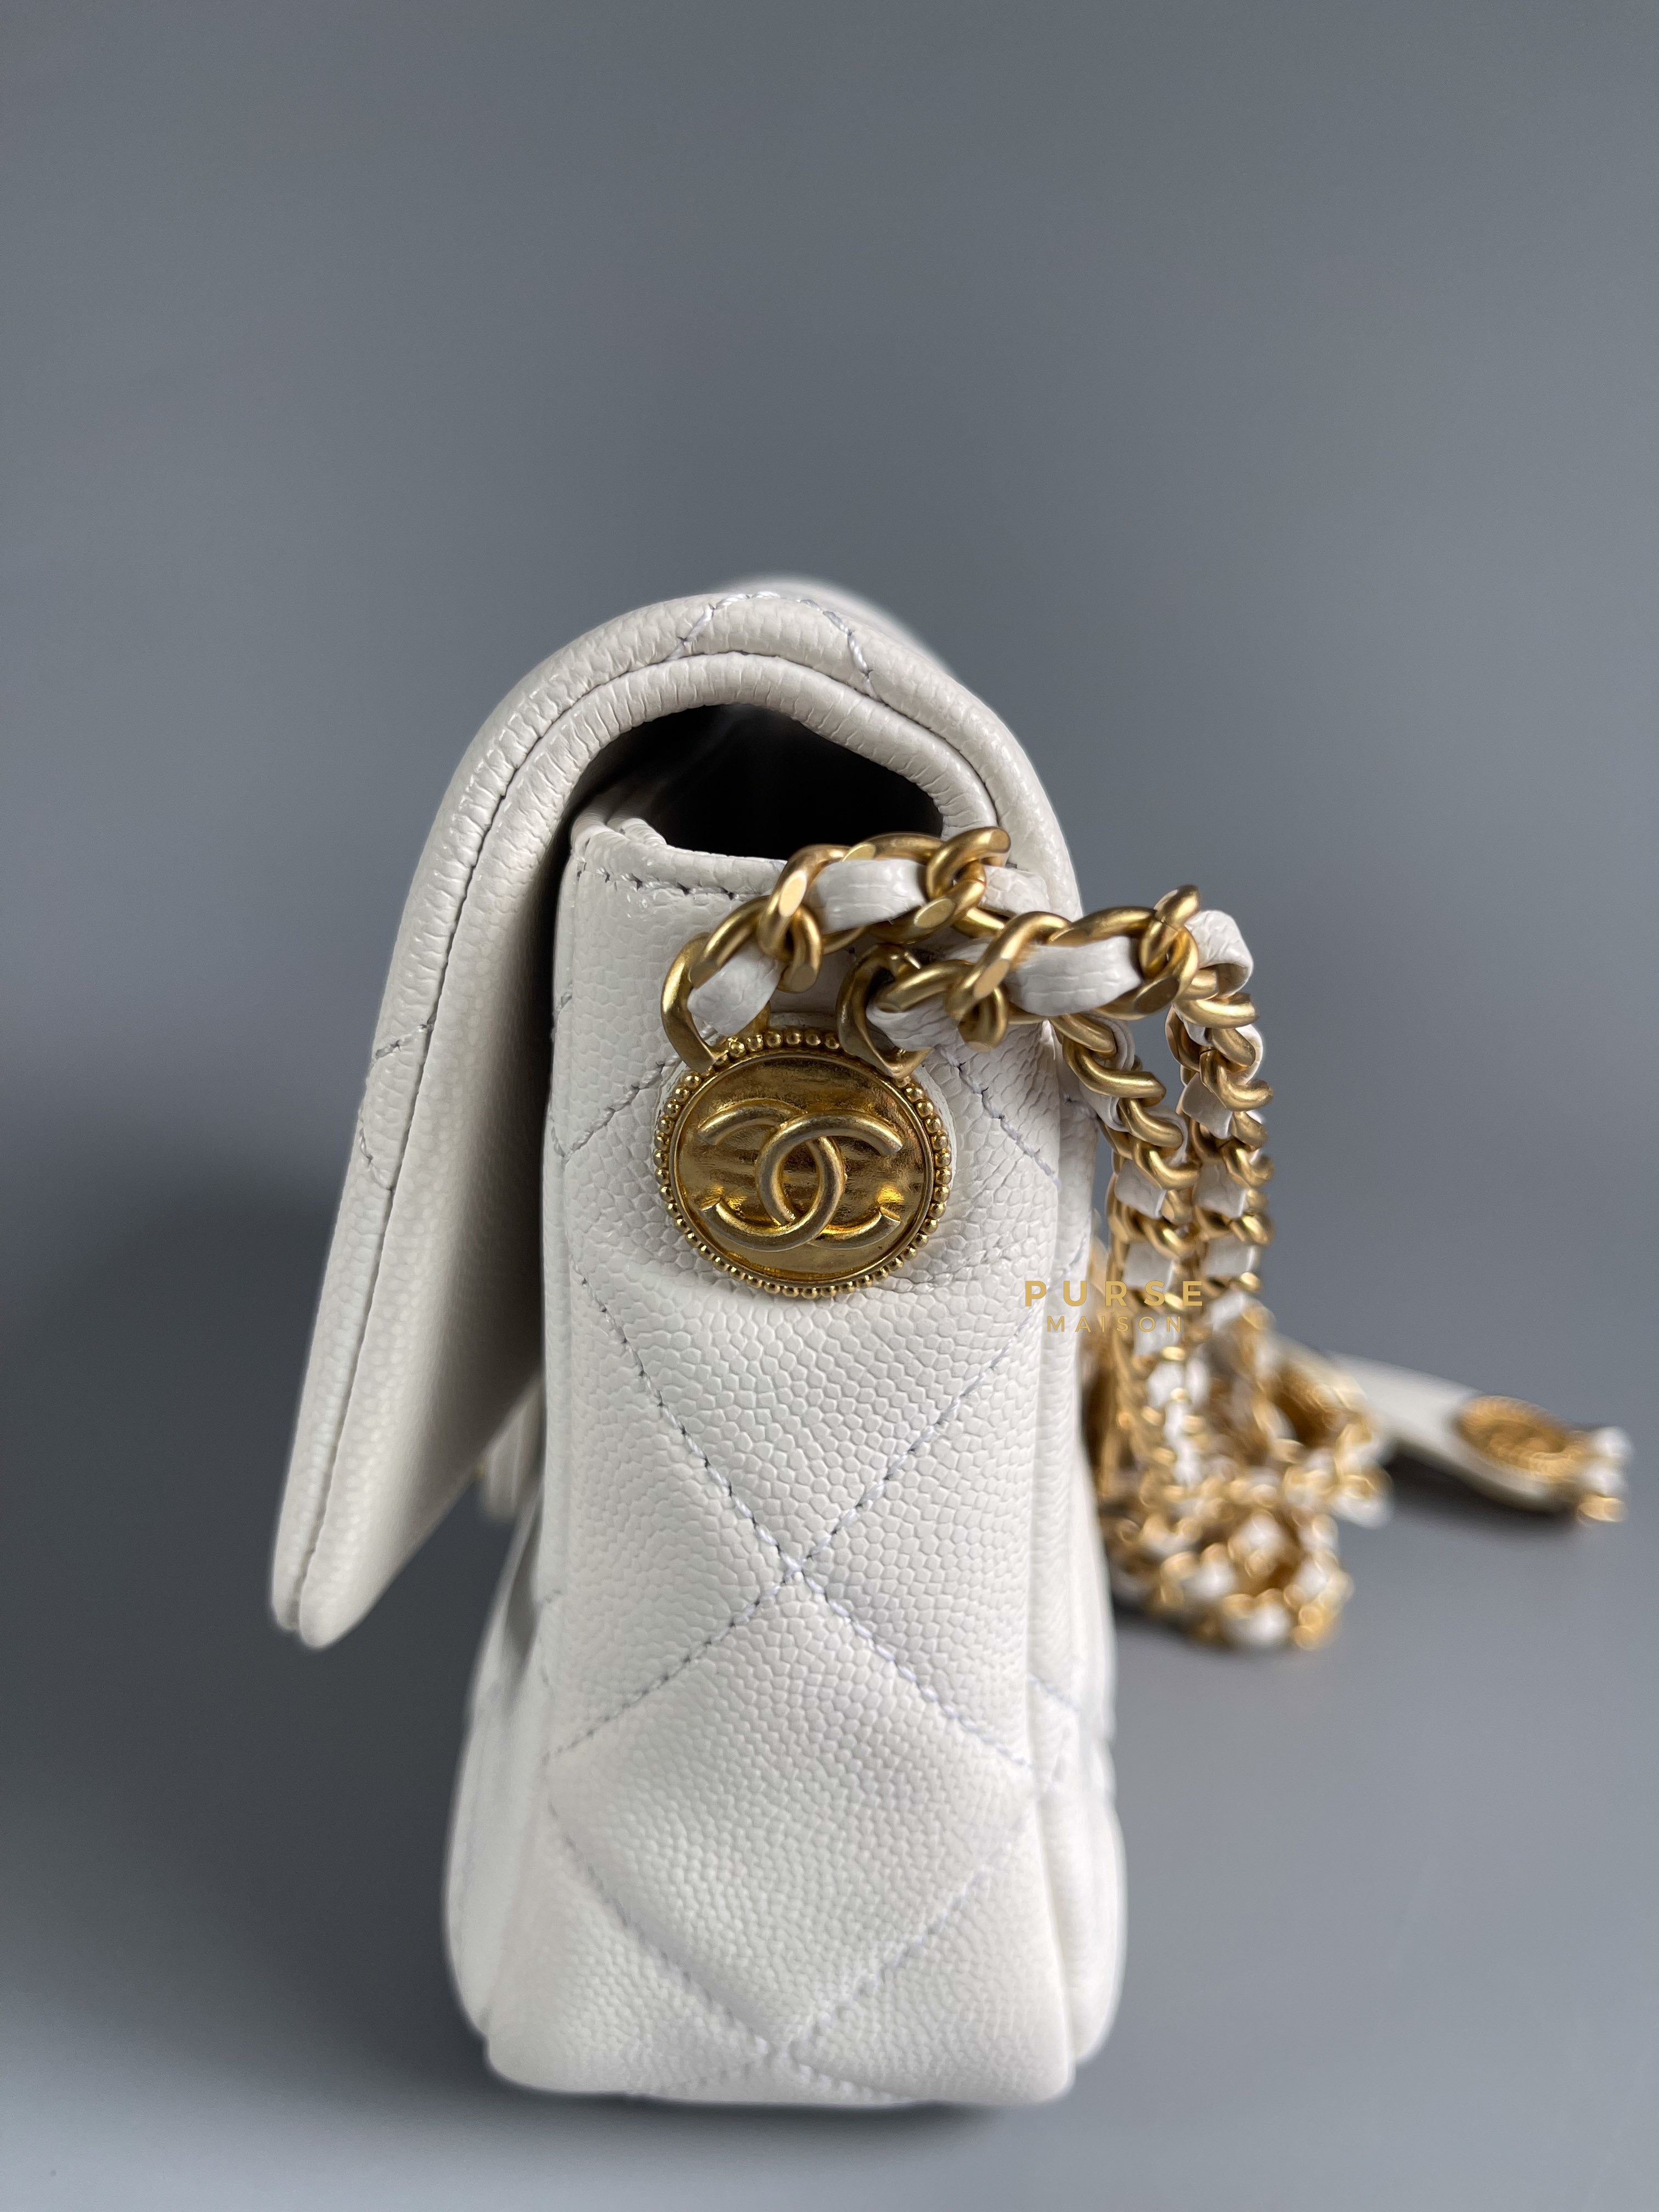 Chanel 22A White Caviar Twist Your Buttons Mini Flap Bag Gold Hardware | Purse Maison Luxury Bags Shop